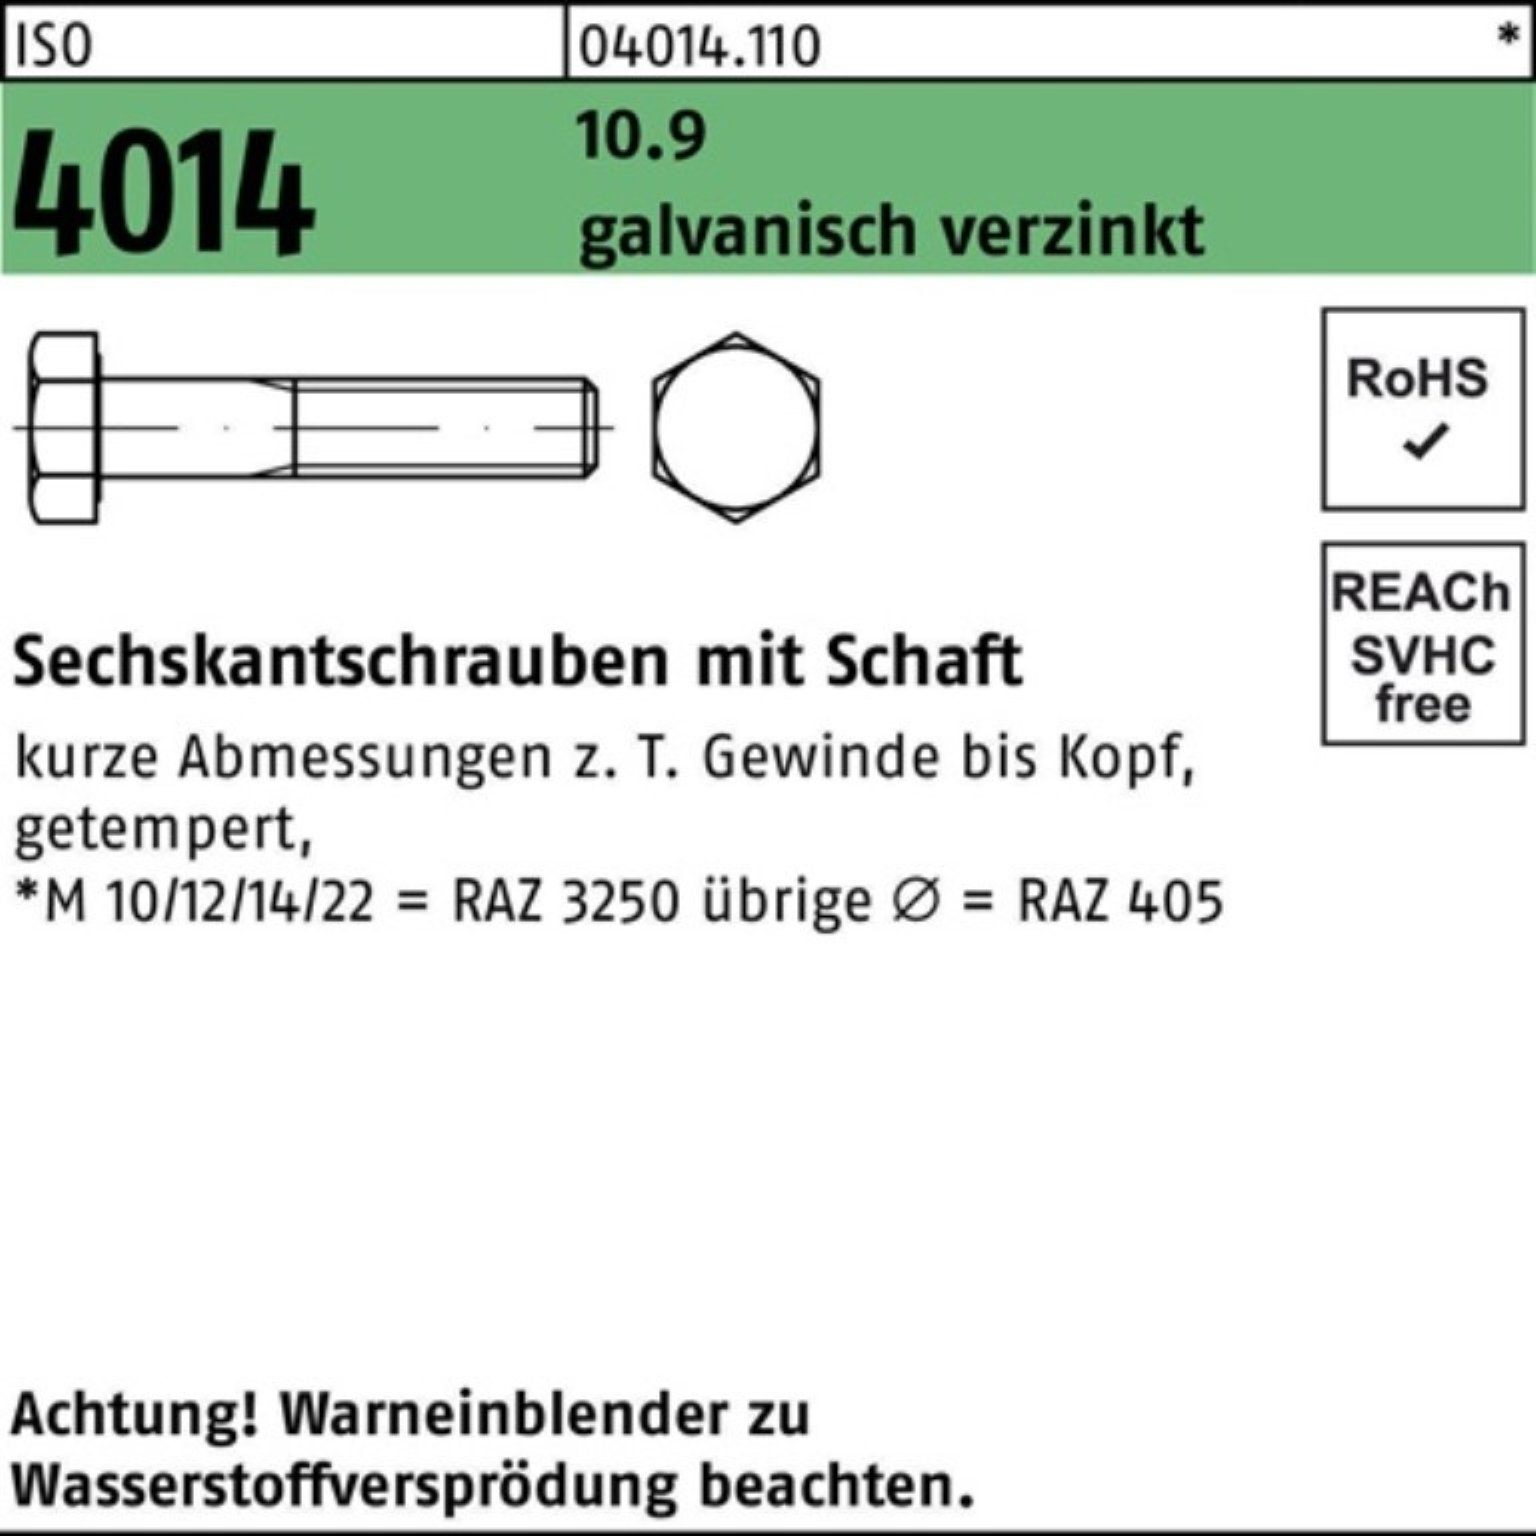 Bufab Sechskantschraube 100er 4014 ISO 1 Sechskantschraube galv.verz. 120 10.9 Schaft M8x Pack